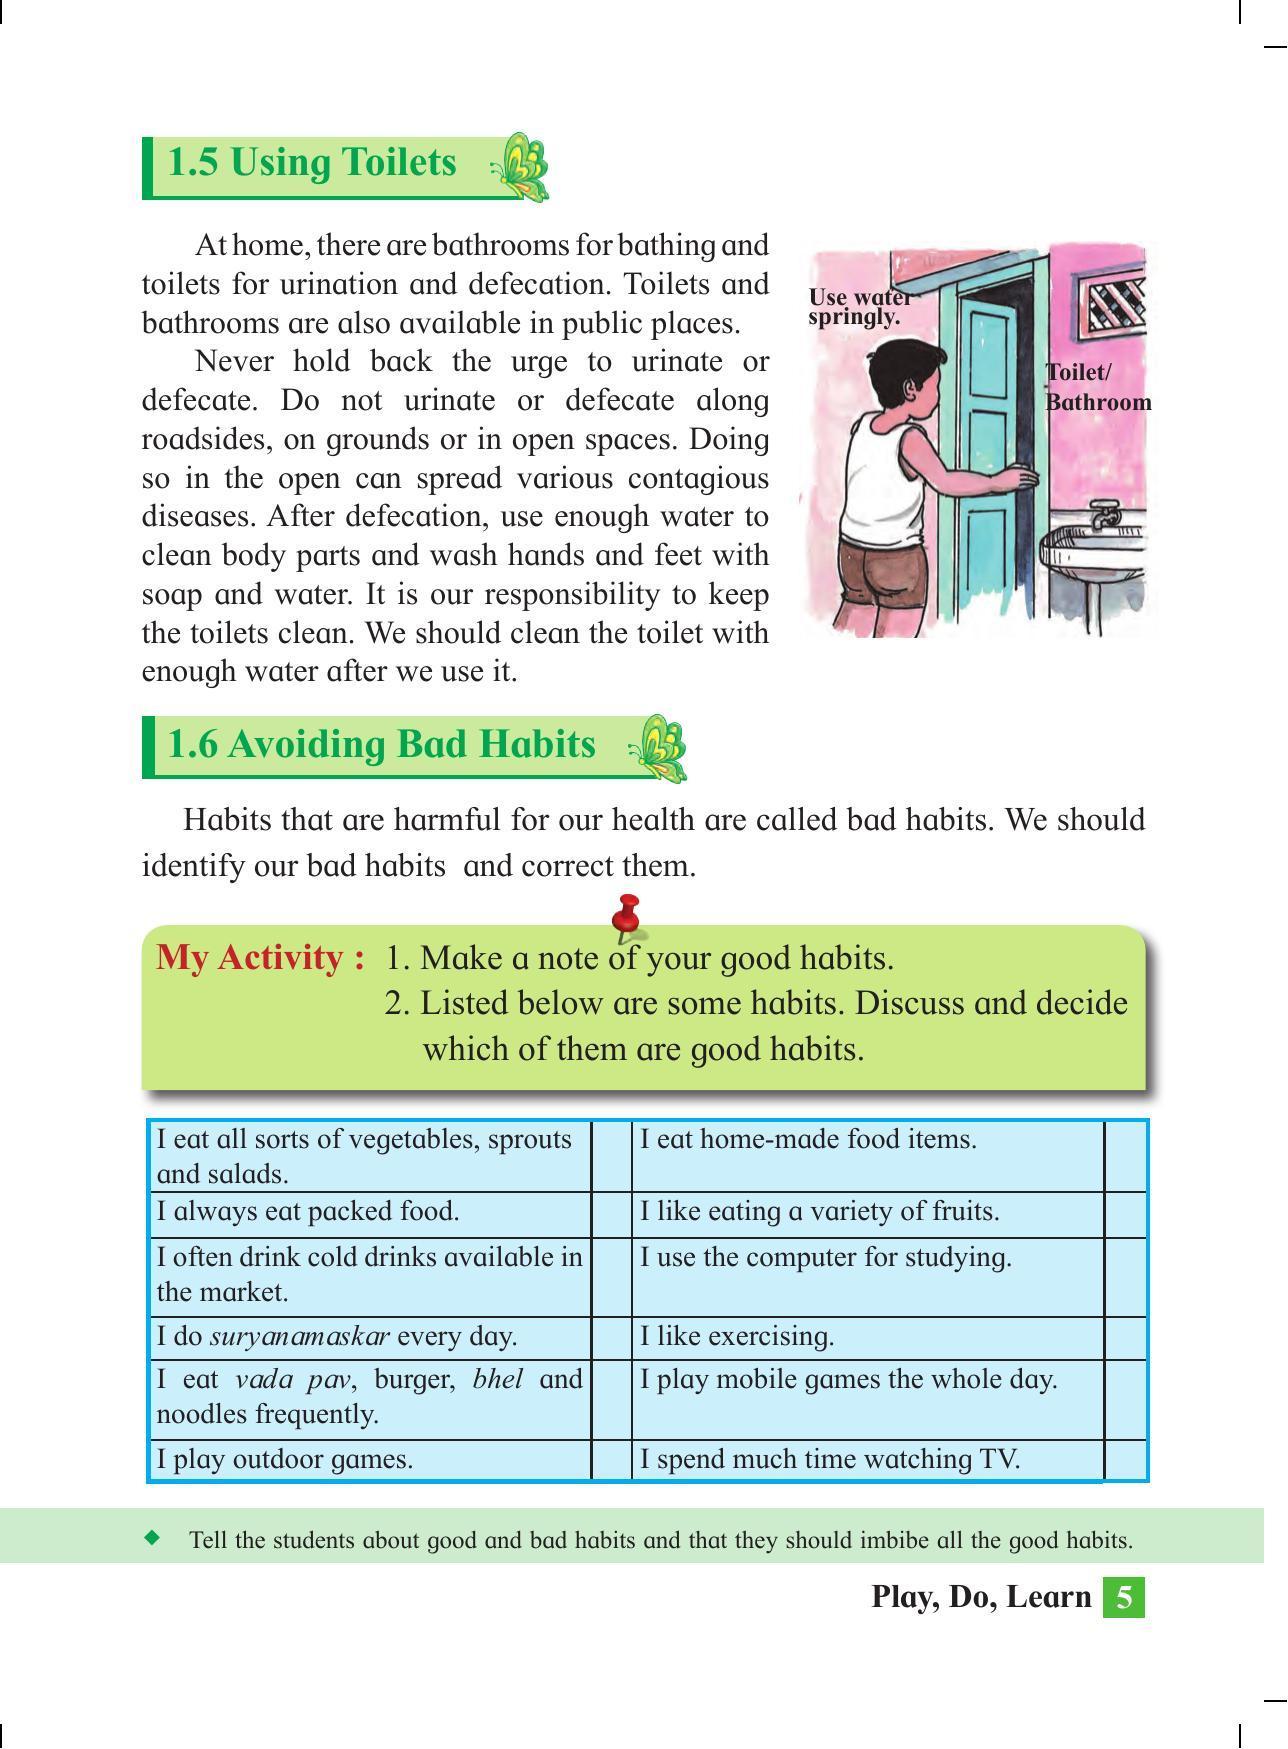 Maharashtra Board Class 4 Play Do Learn (English Medium) Textbook - Page 14